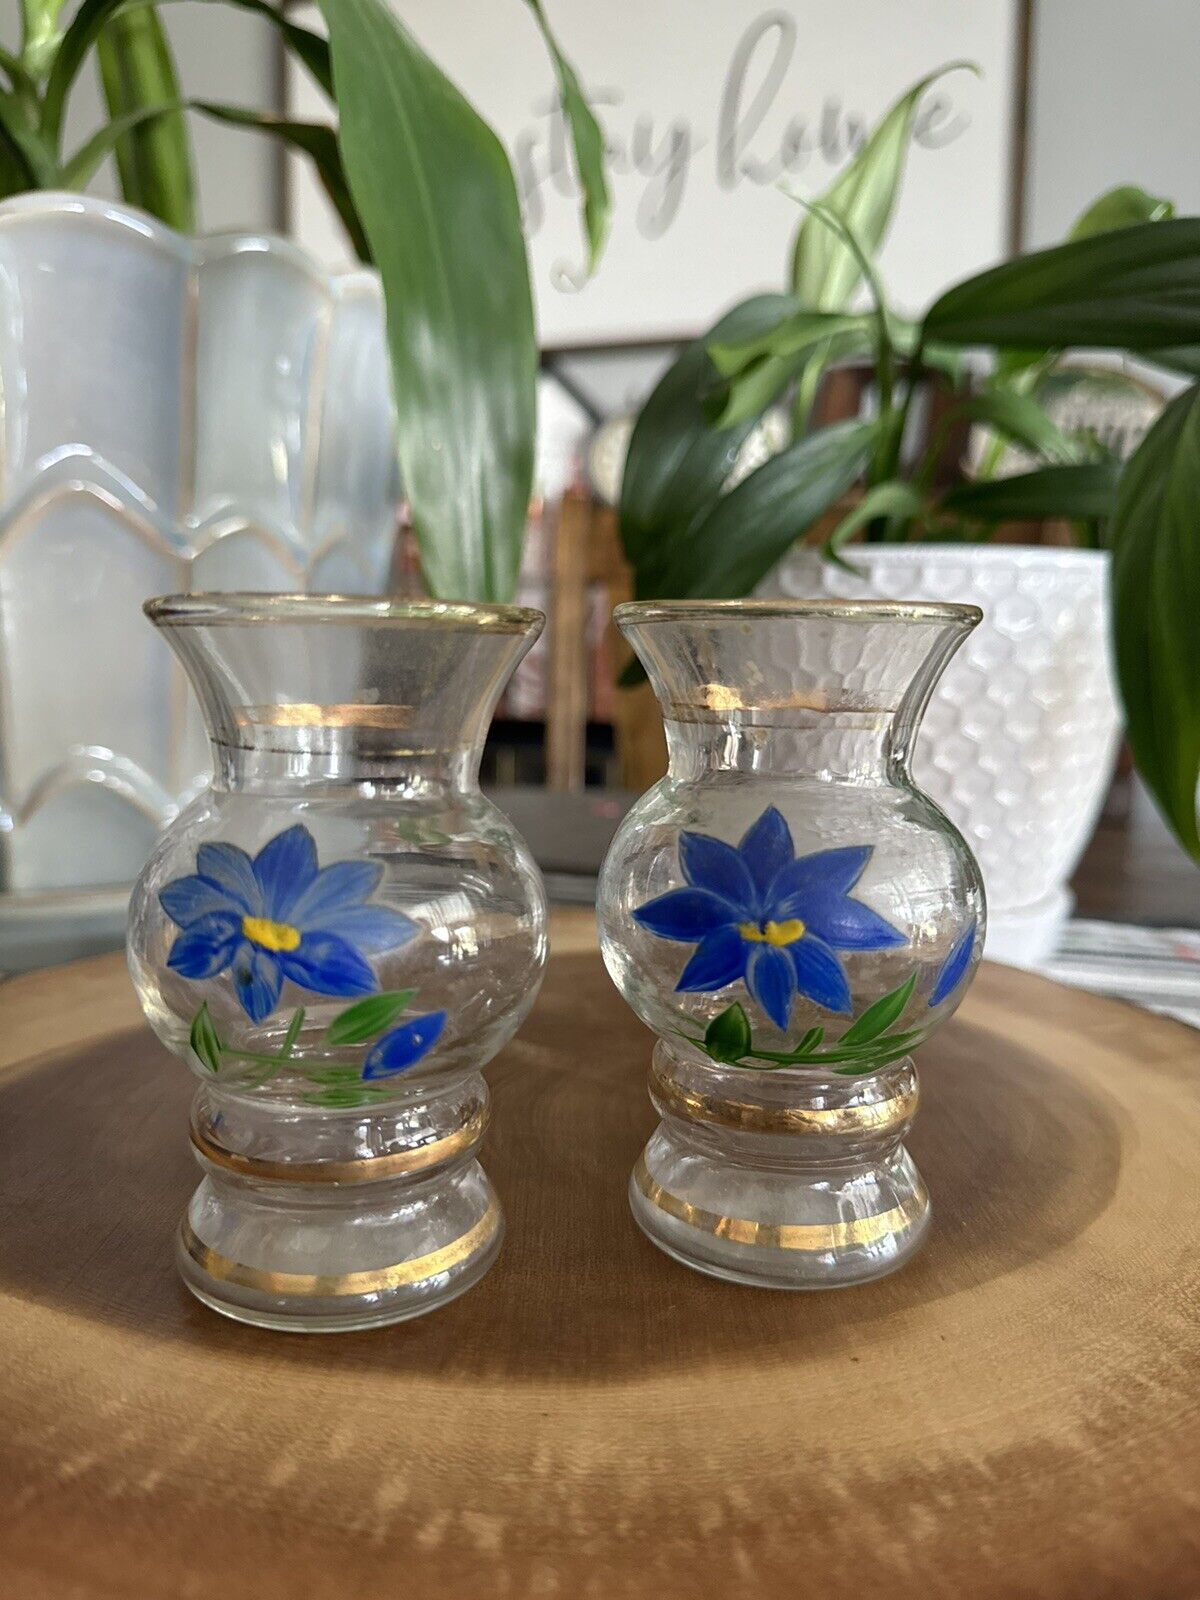 Pair Of Vintage Bartlett Miniature Vases, Gold Trimmed, Blue Floral